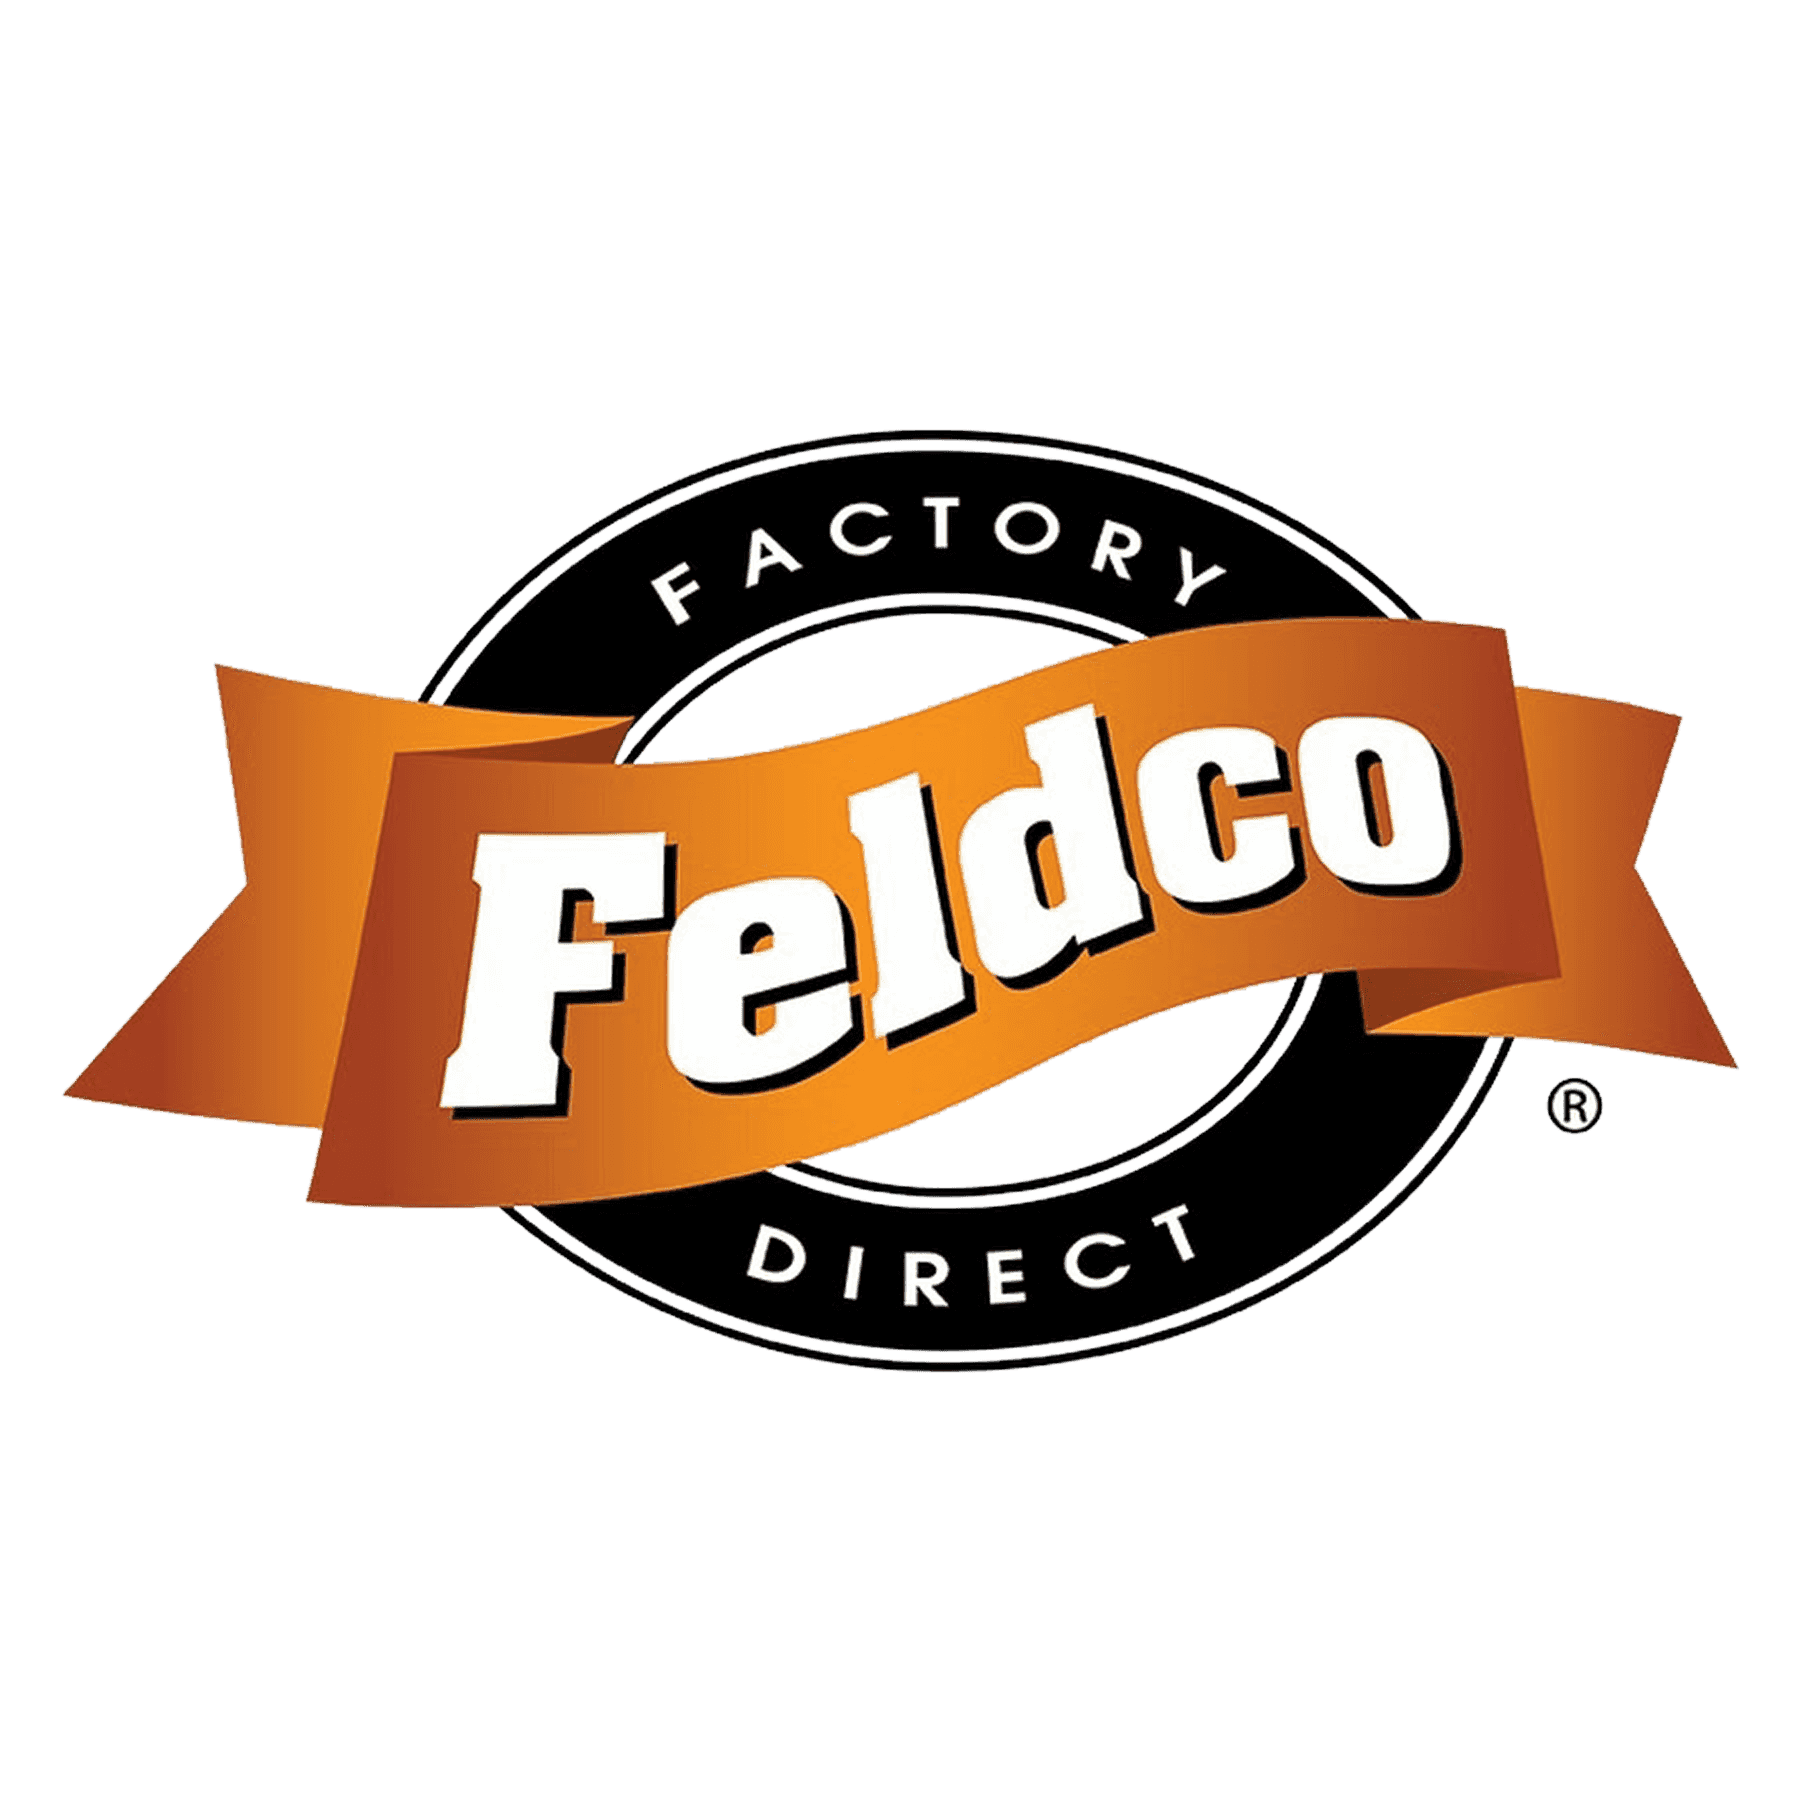 Feldco Factory